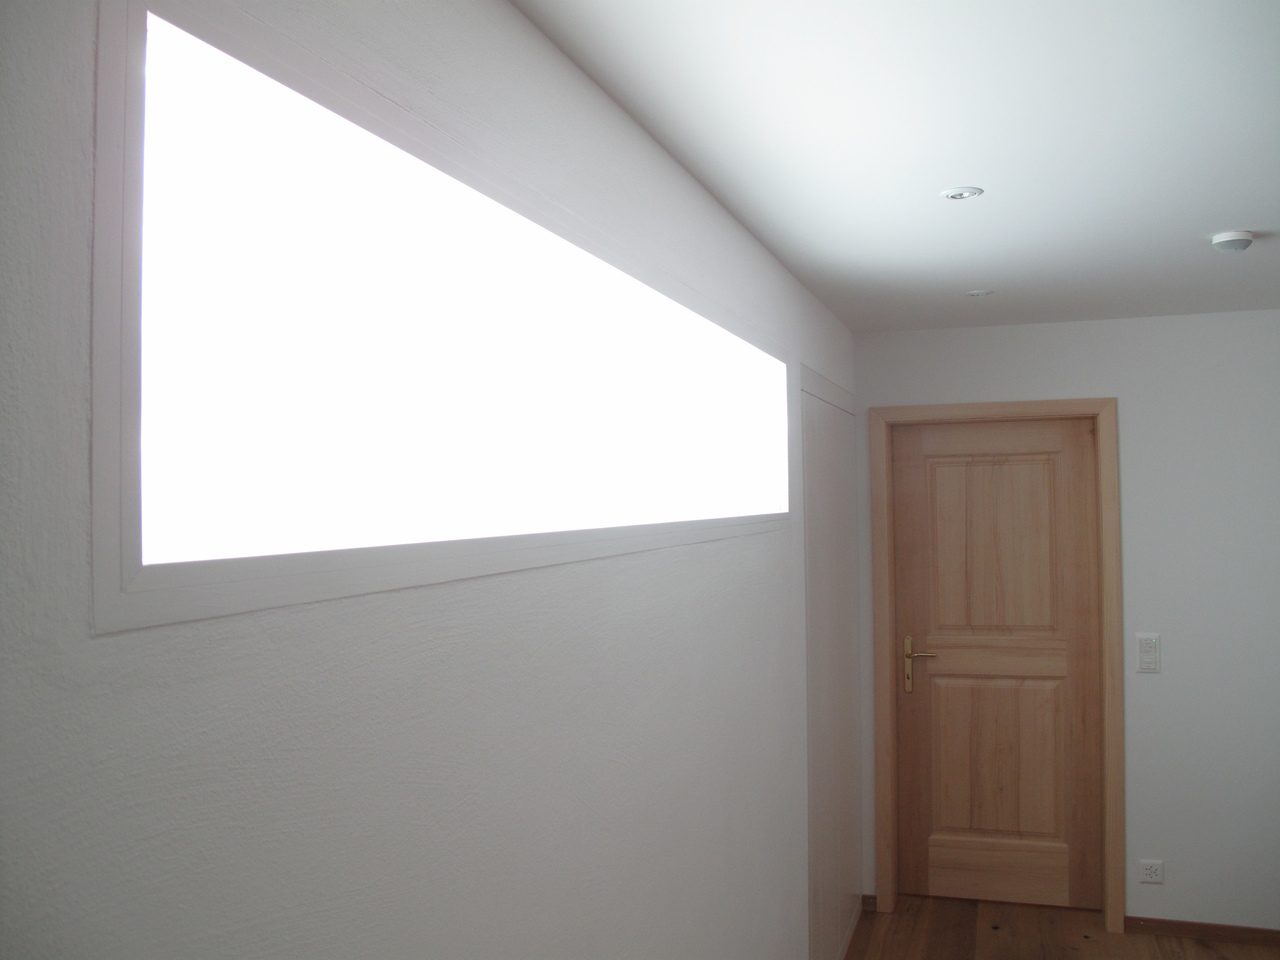 Tageslichtlösungen für gefangene Räume - Light Guide Heliobus AG